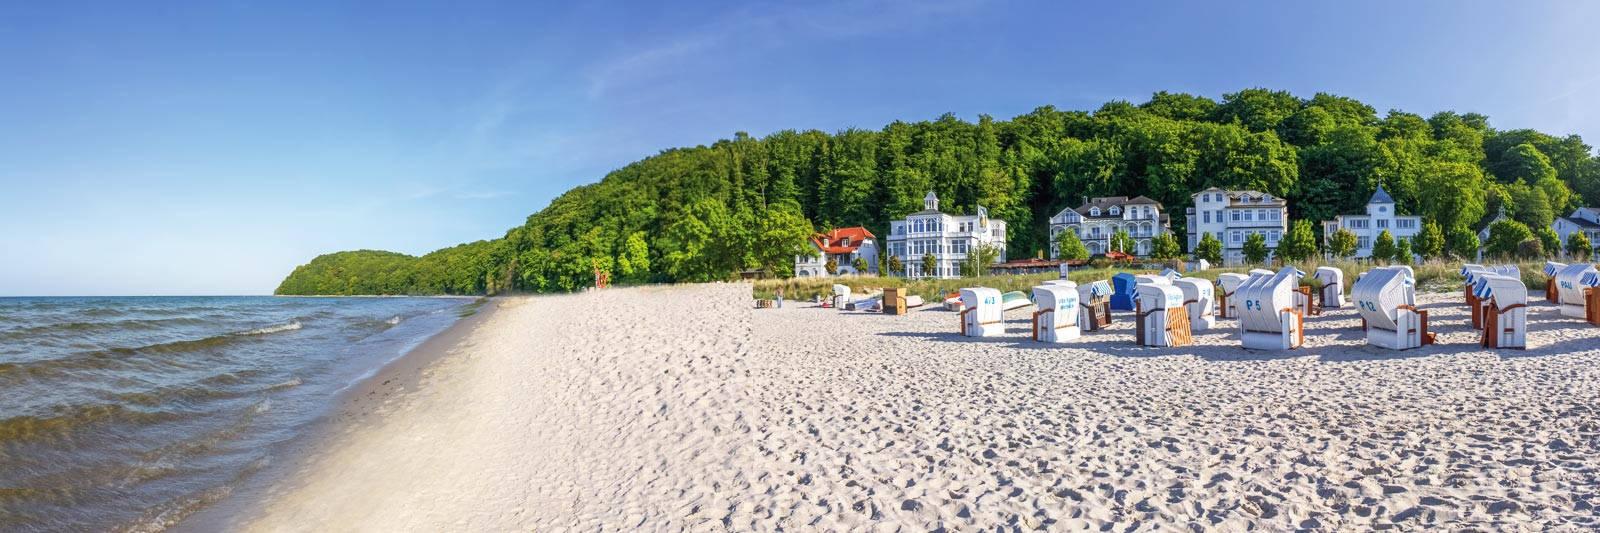 26 Ferienwohnungen und Ferienhäuser in Neukalen - tourist-online.de